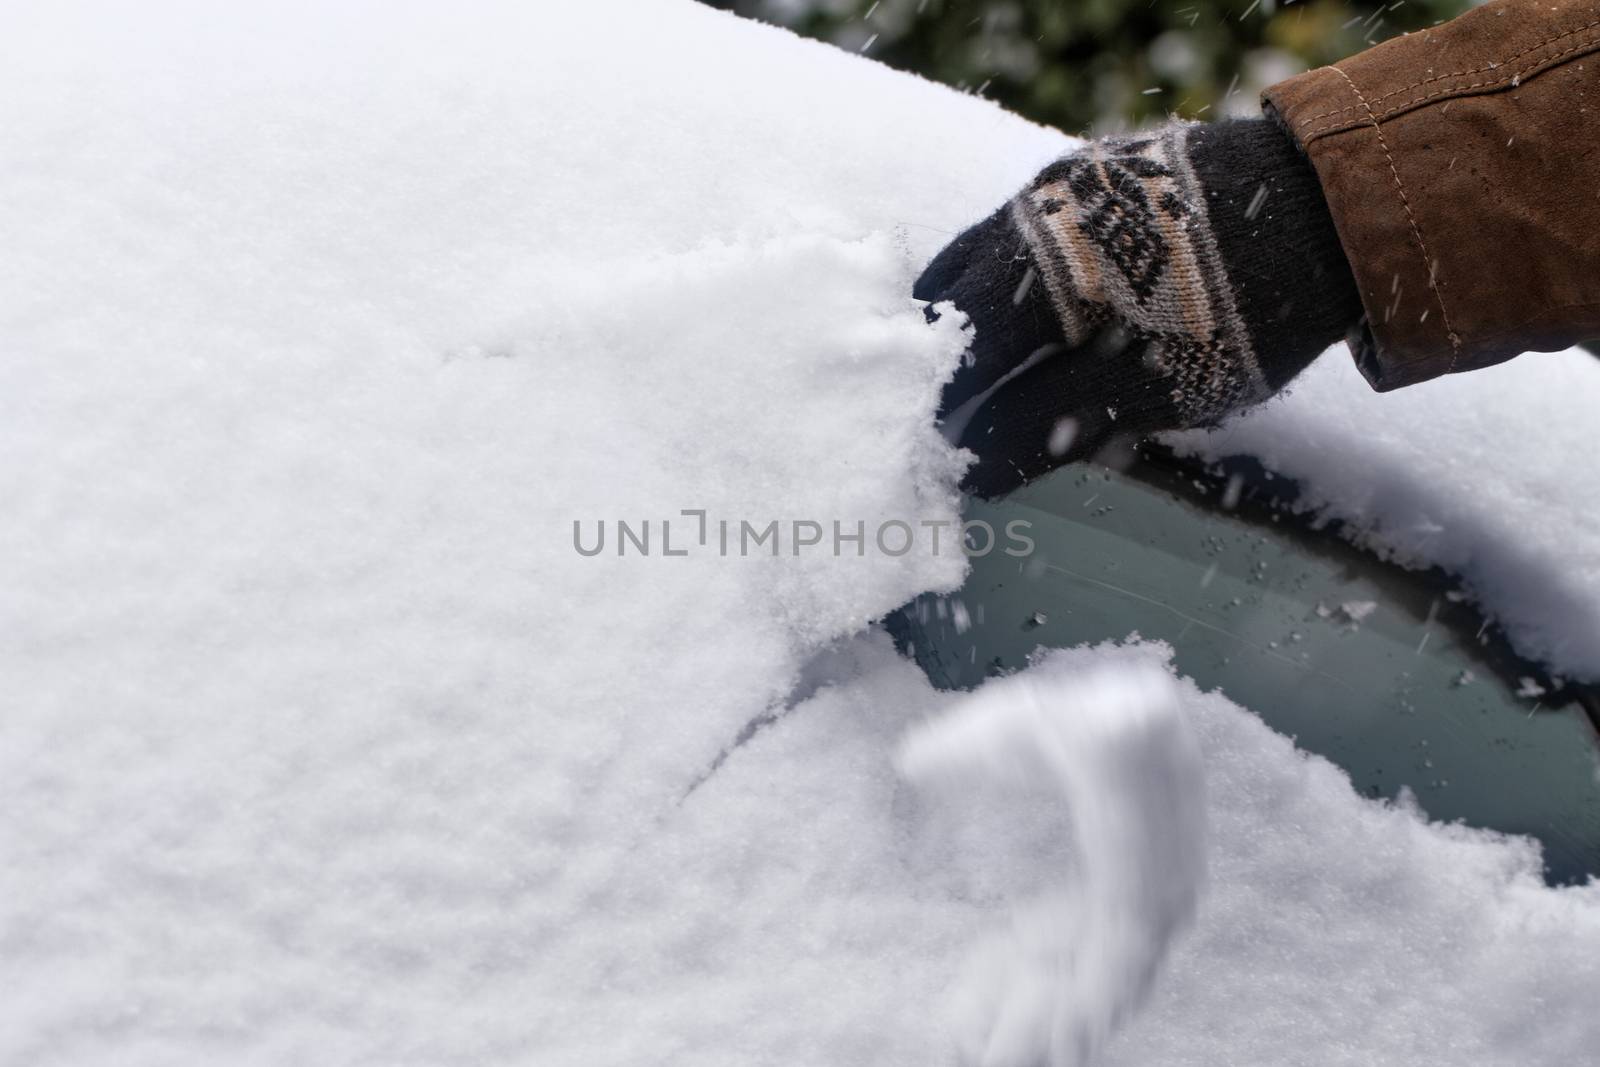 Snowy car by Nneirda